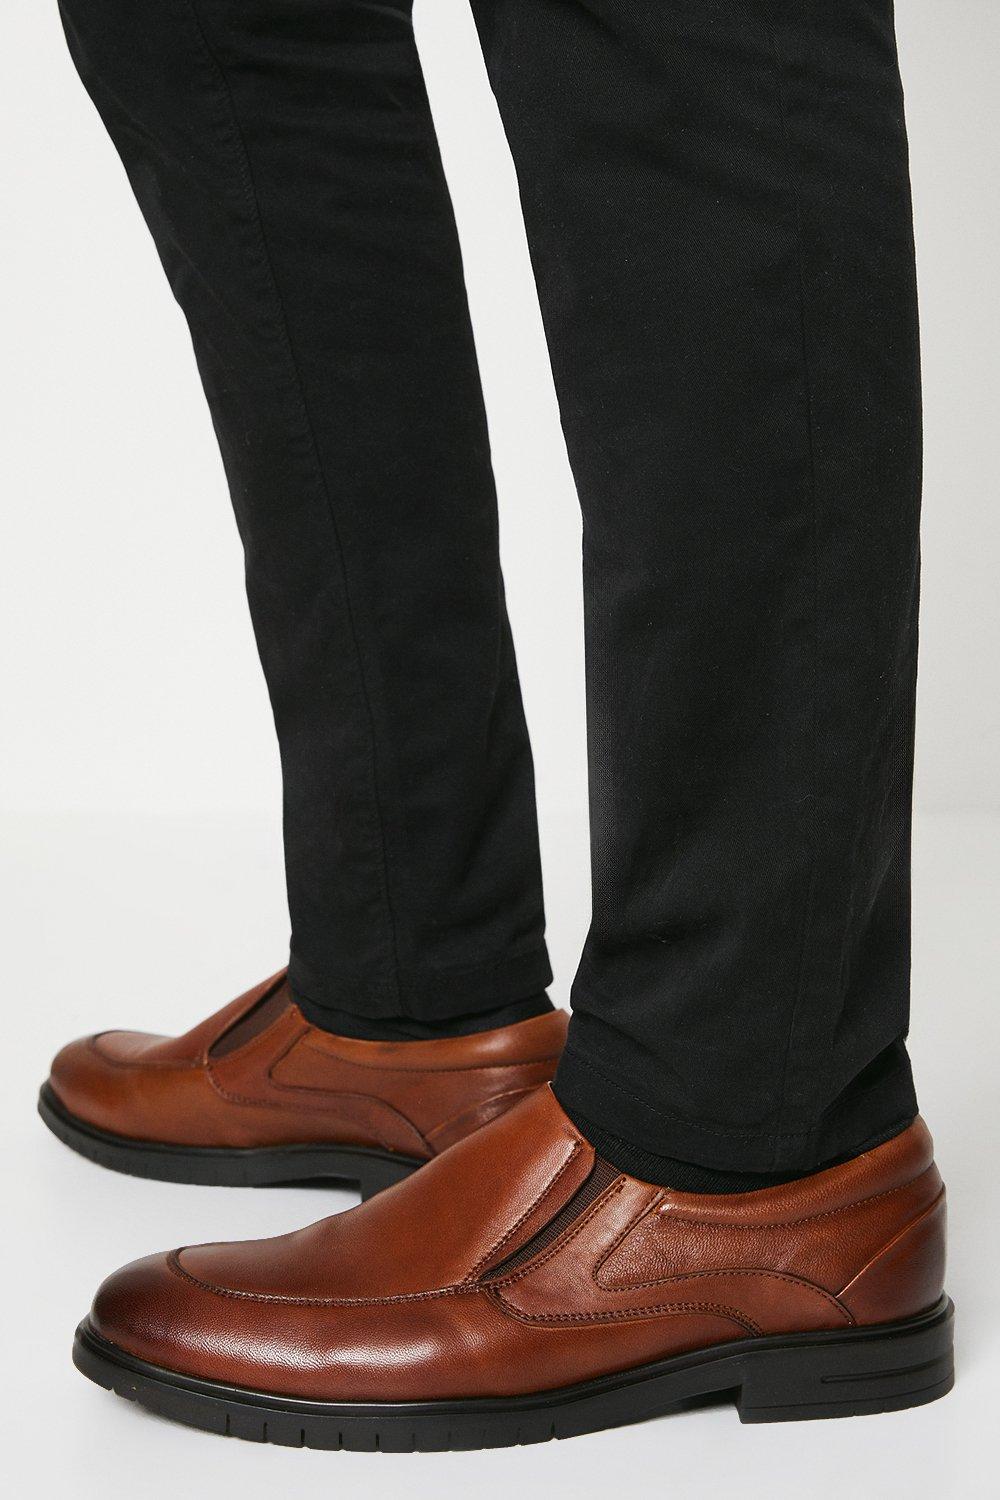 Кожаные повседневные туфли без шнуровки Airsoft Comfort Debenhams, коричневый кожаные туфли airsoft comfort на шнуровке debenhams коричневый